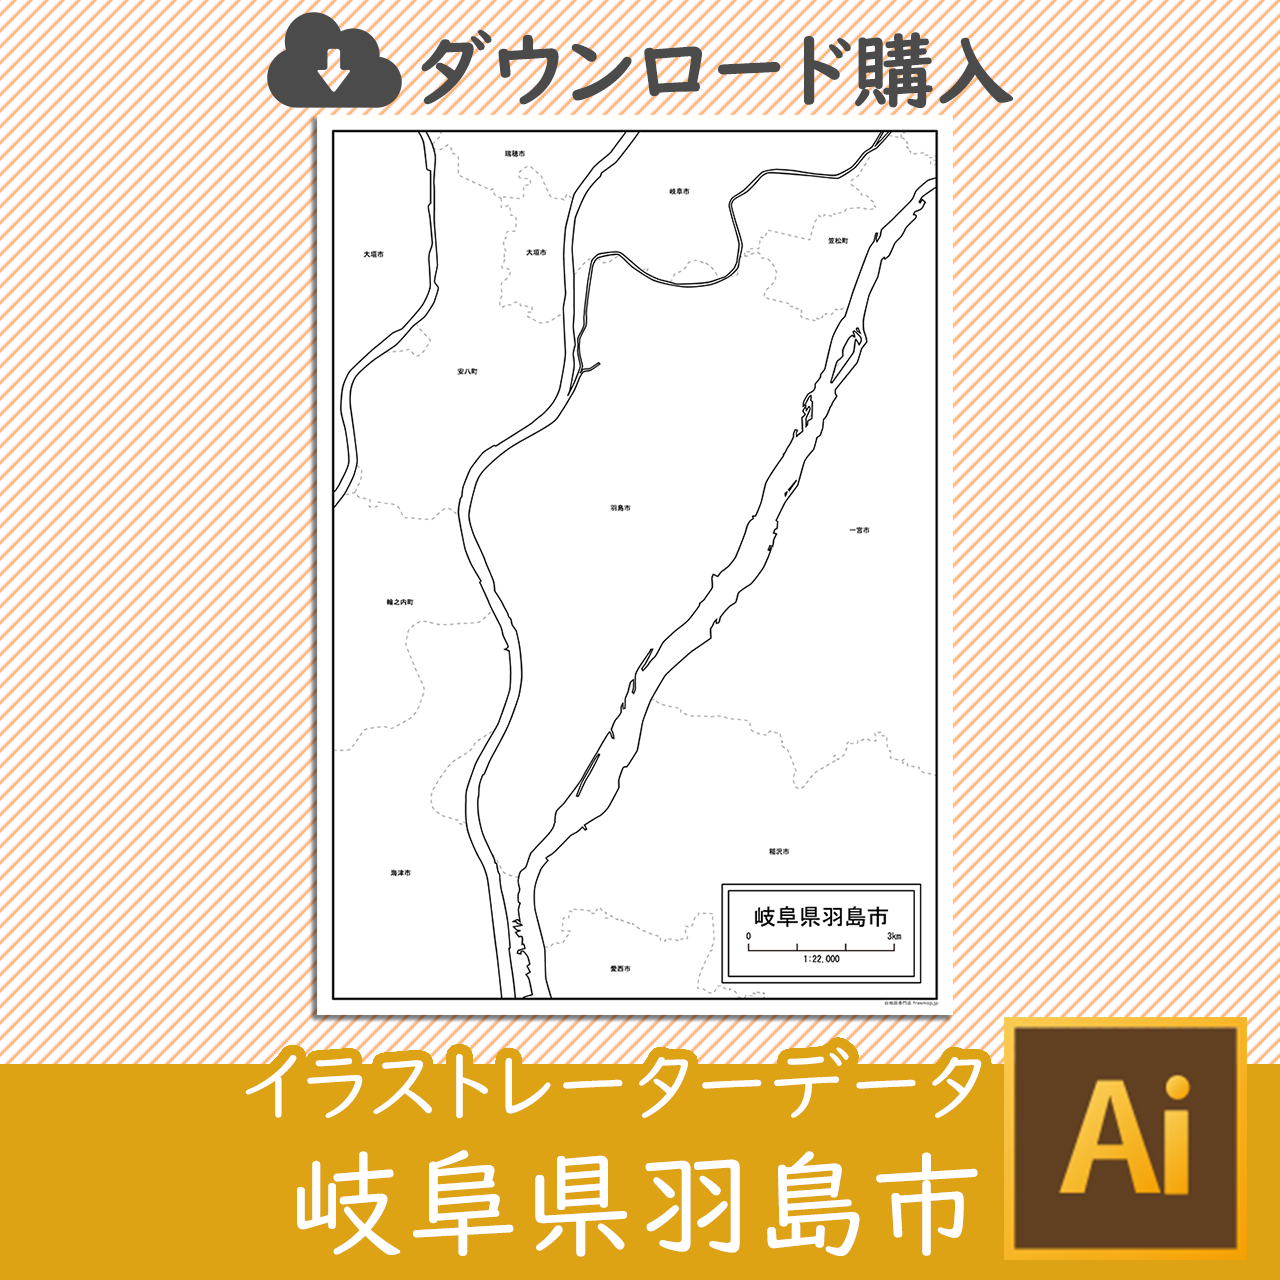 羽島市のaiデータのサムネイル画像